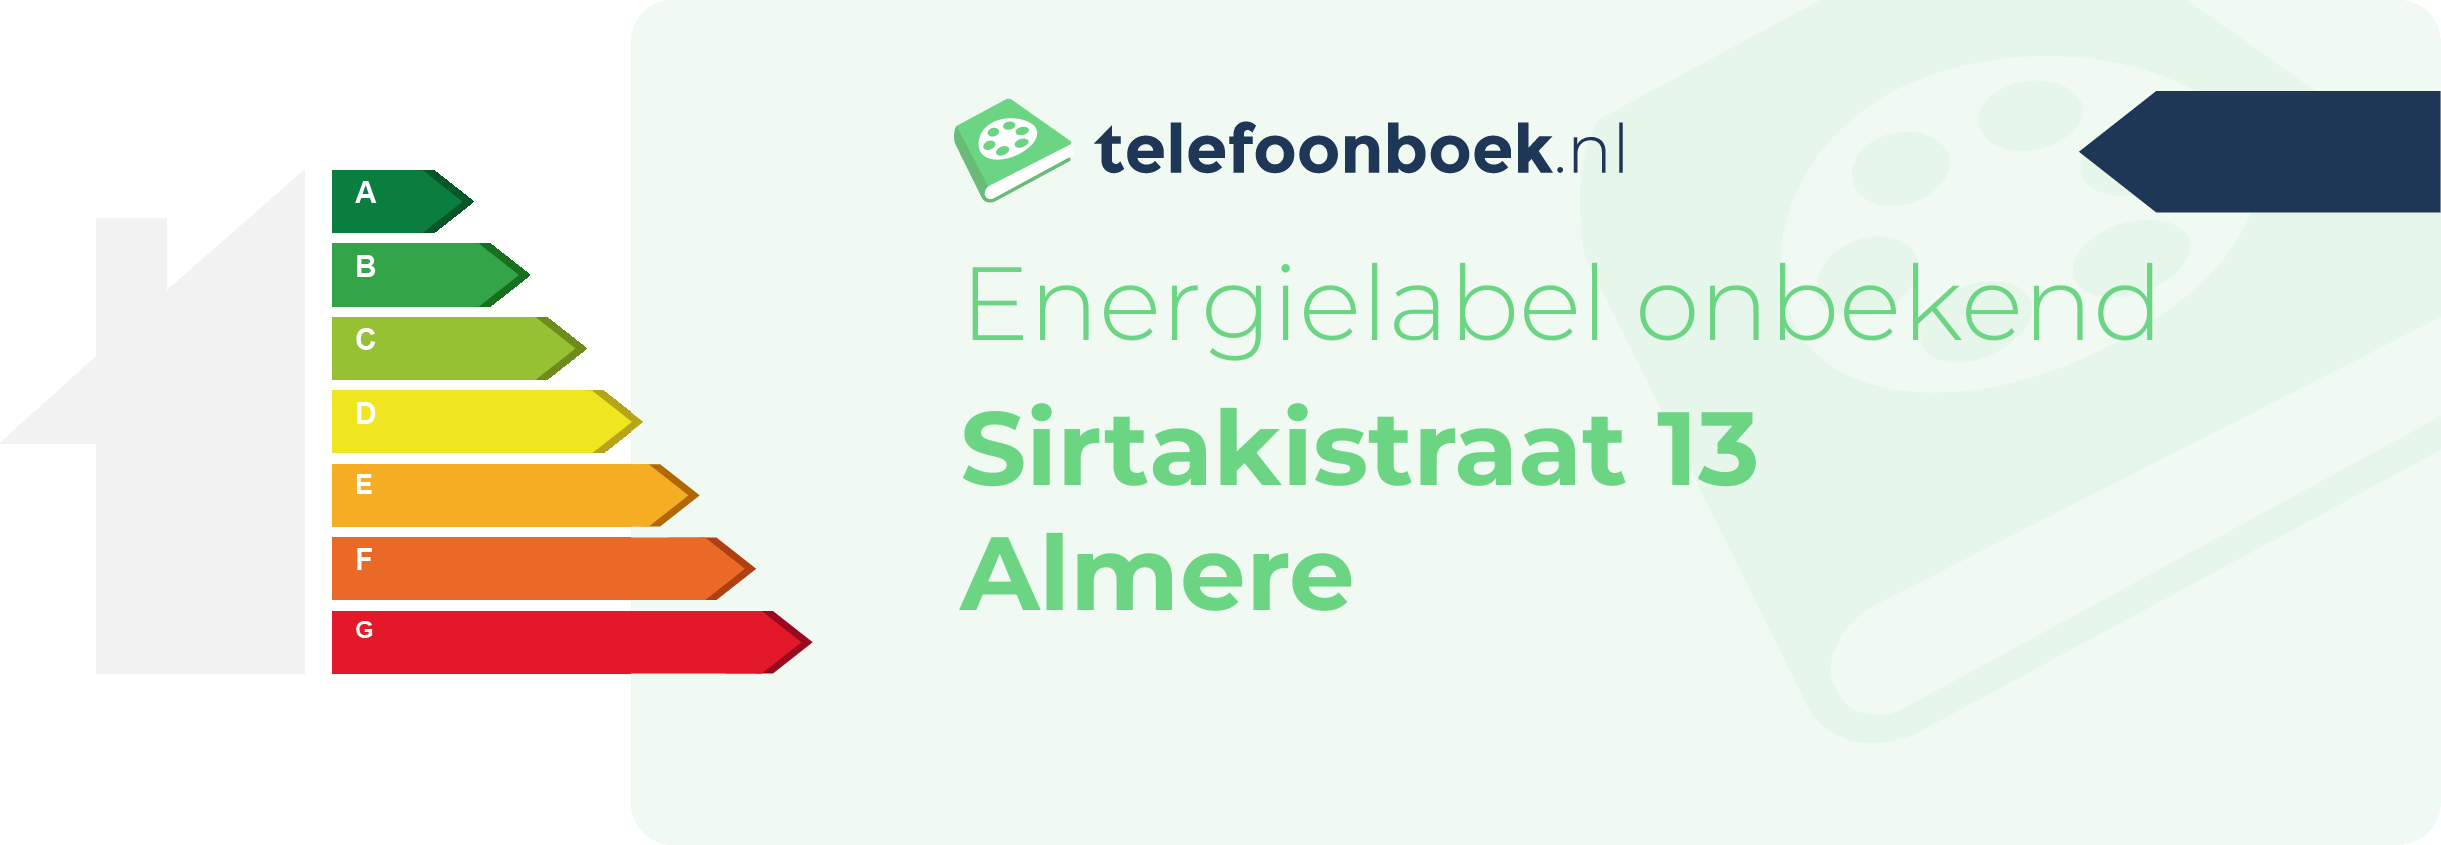 Energielabel Sirtakistraat 13 Almere